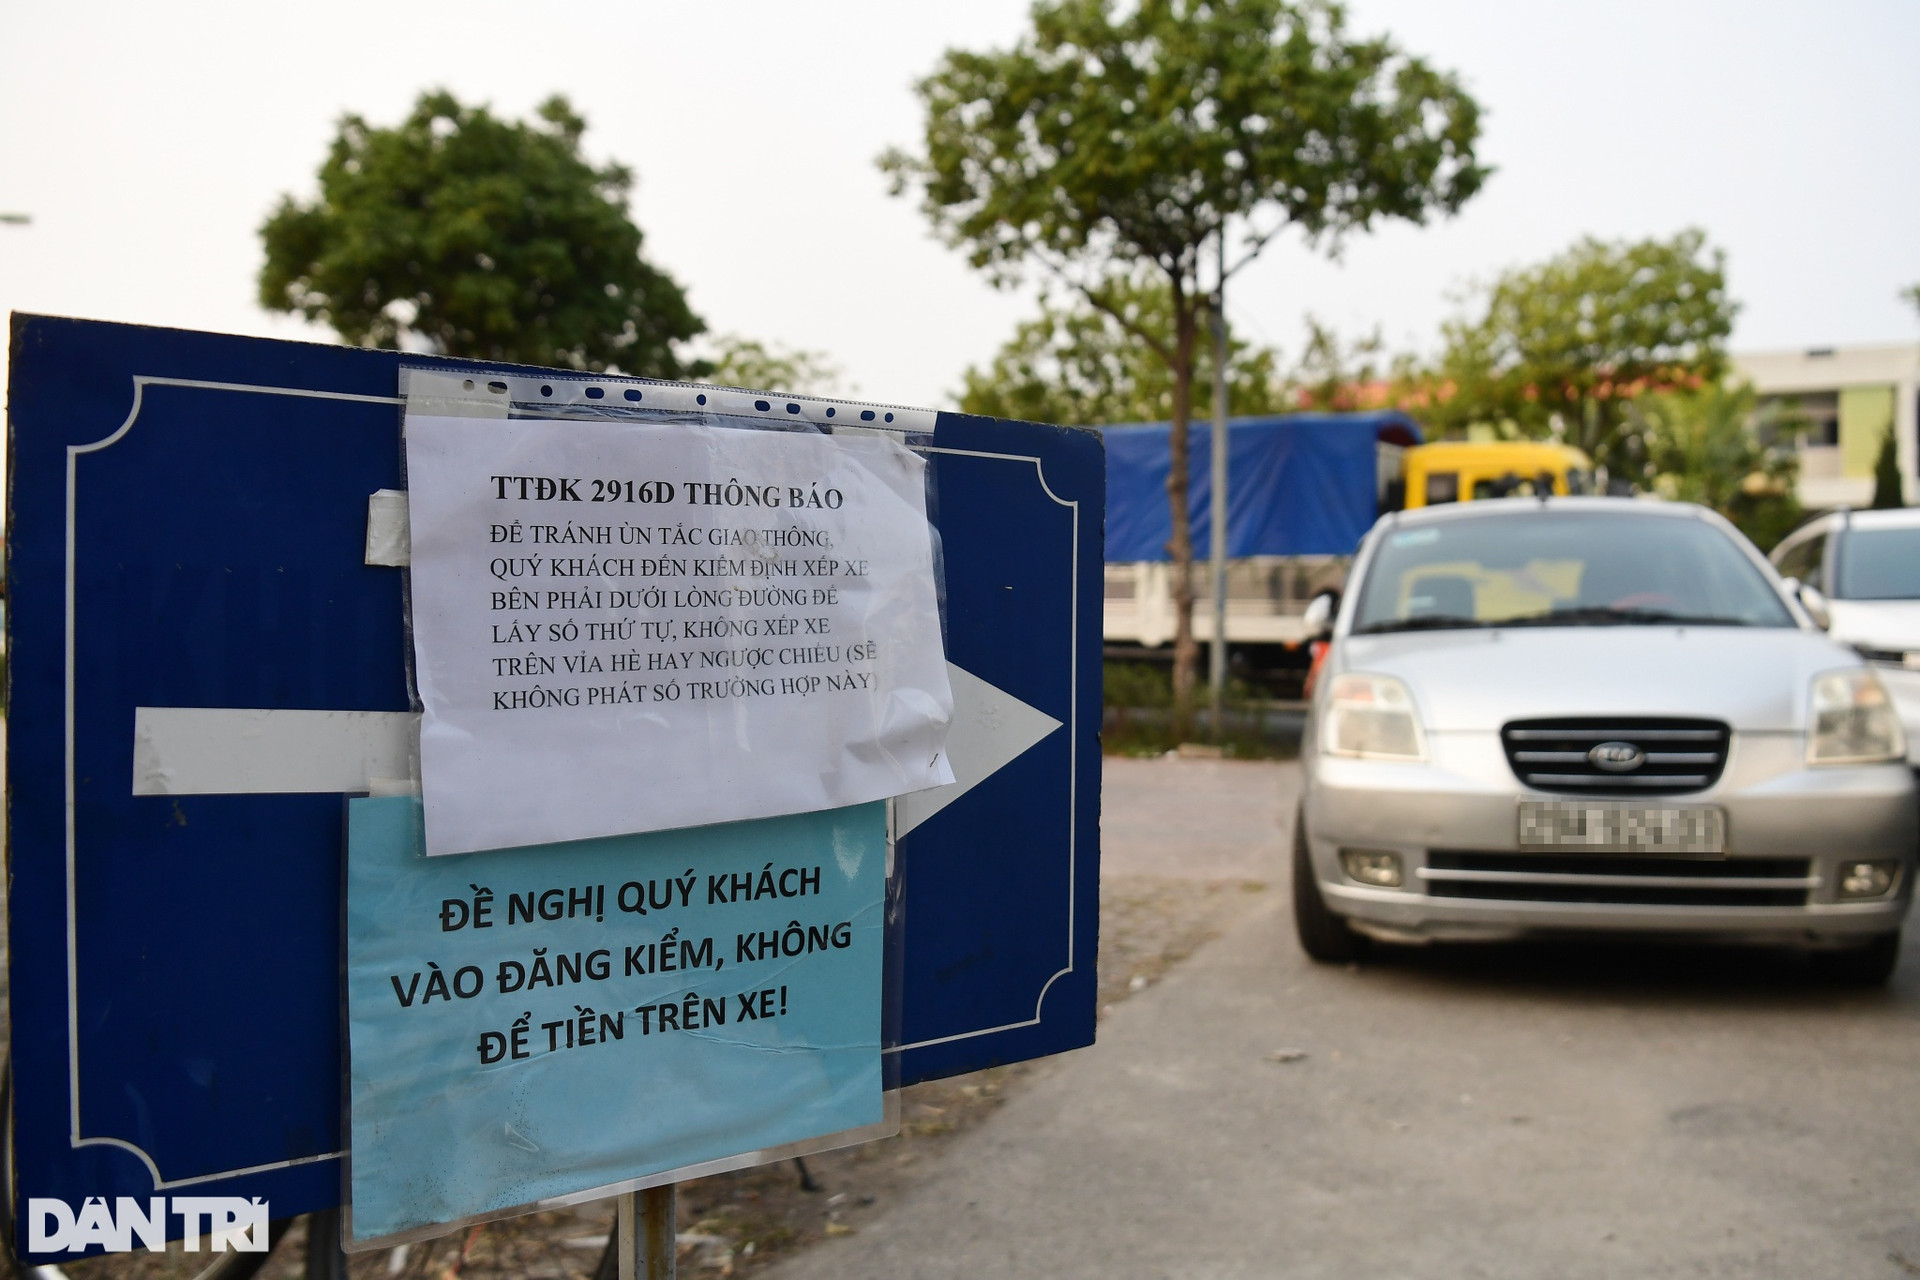 Khổ như đăng kiểm ở Hà Nội: Tài xế vạ vật, người dân xếp thùng đuổi xe - 2